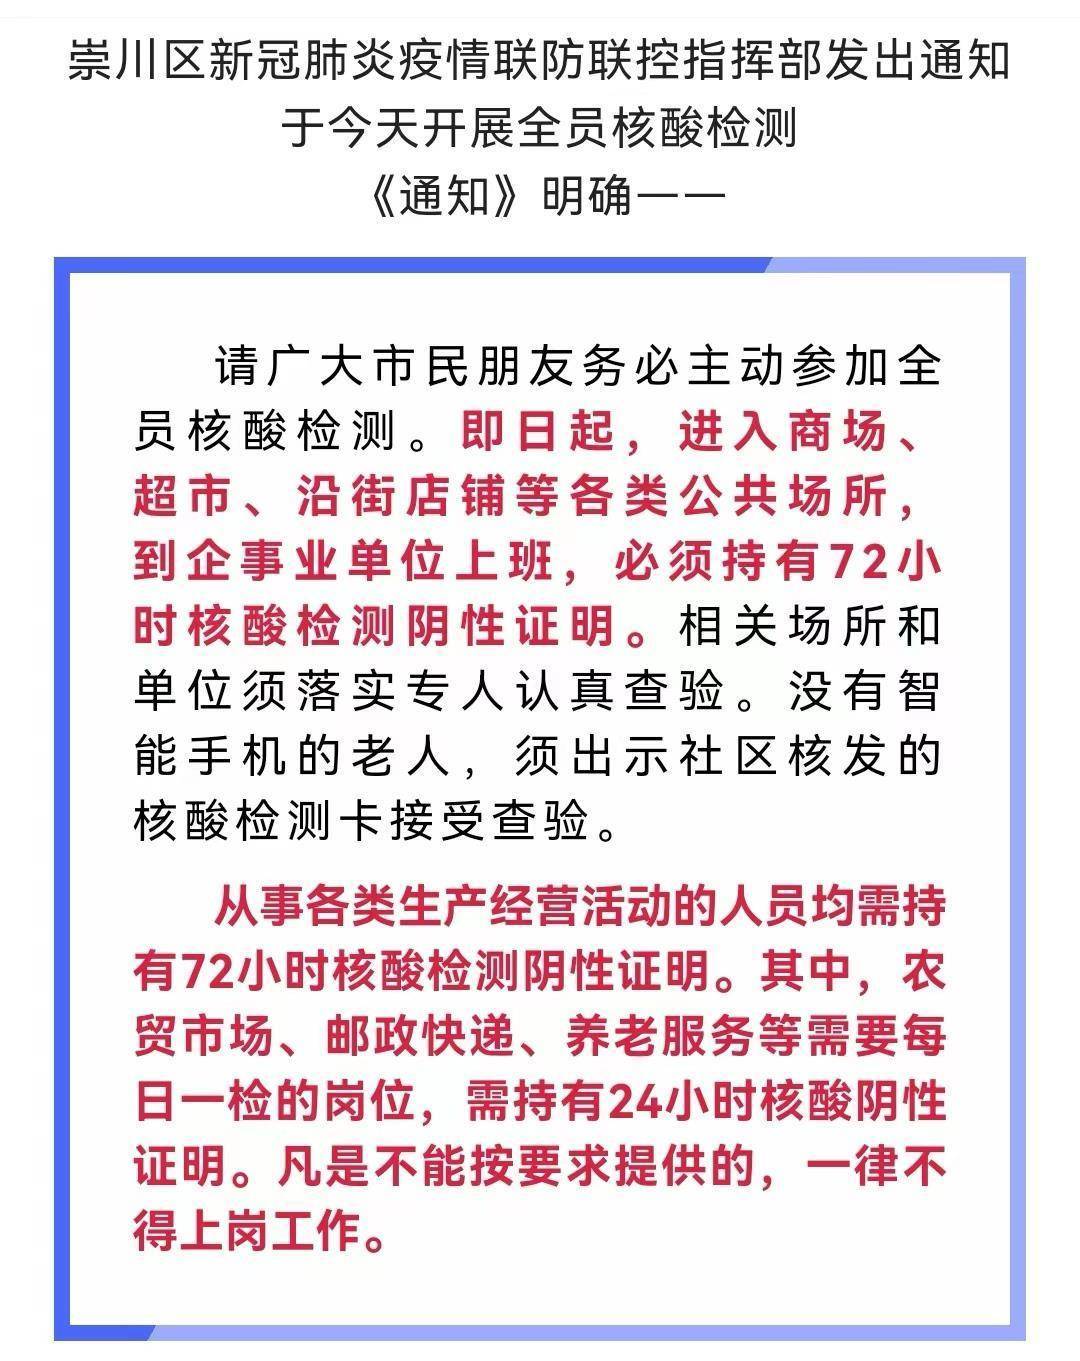 江苏南通市多区发布新规：进入公共场所须持72小时核酸阴性证明